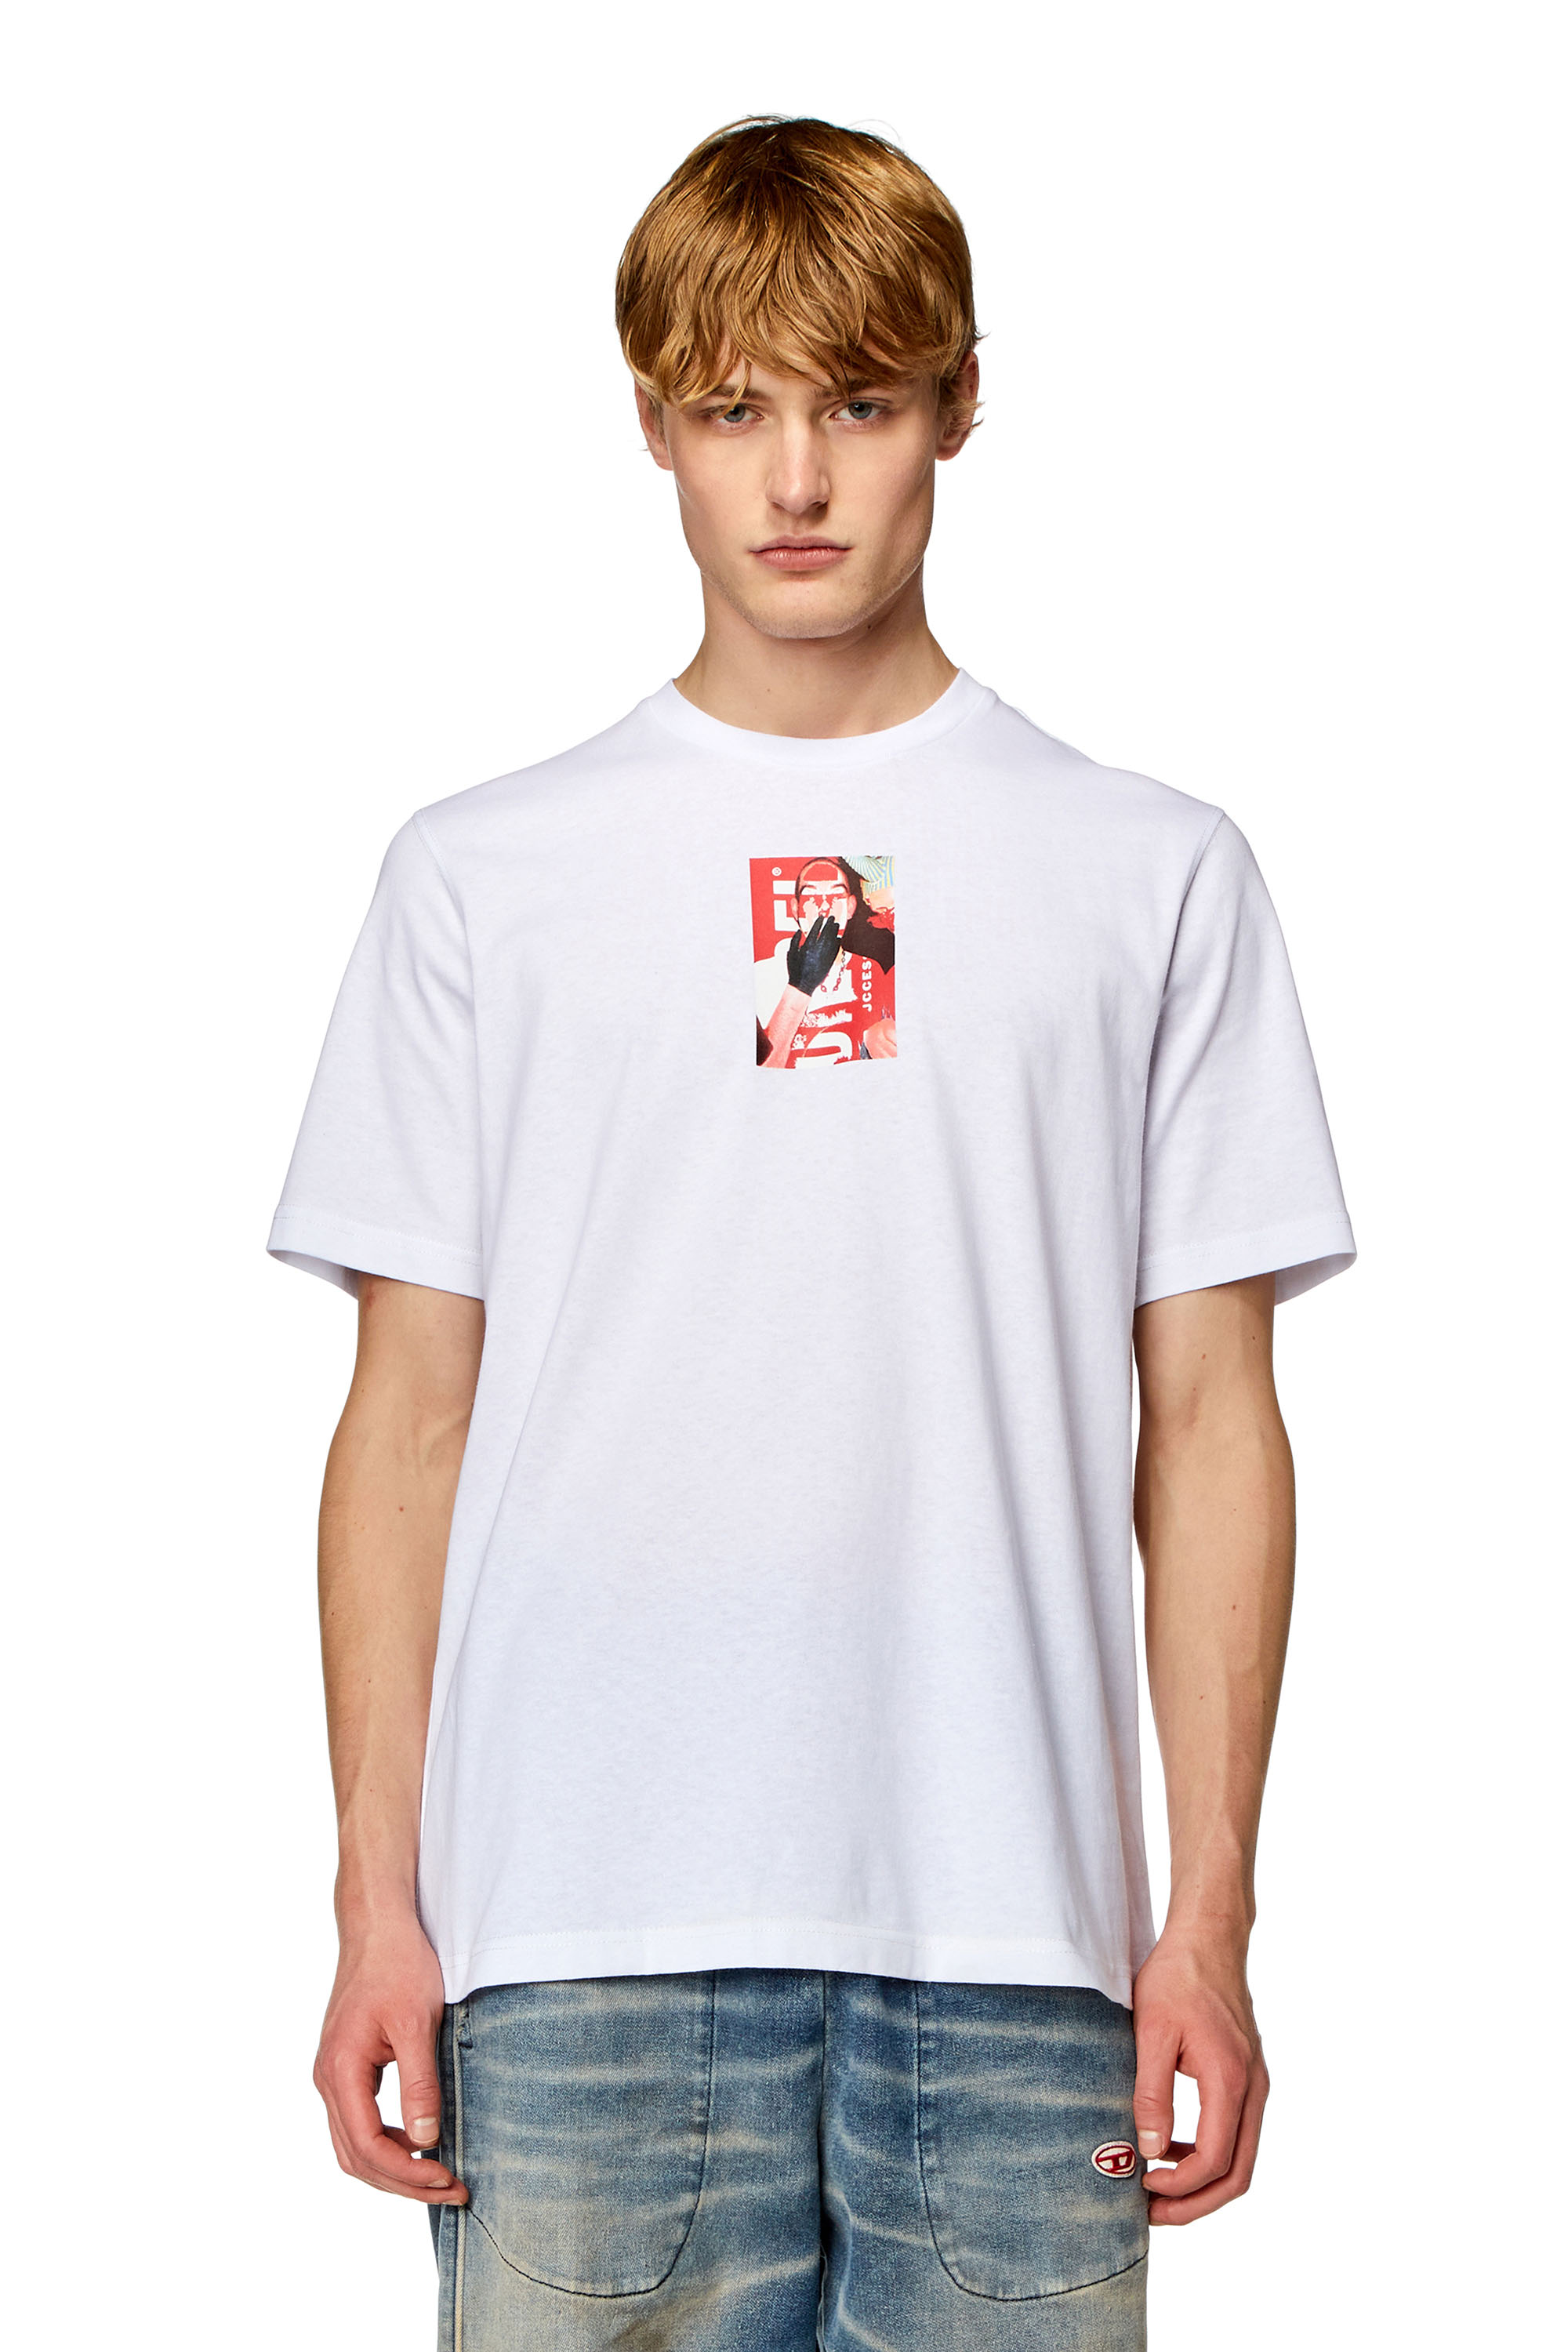 Diesel - T-JUST-N11, Homme T-shirt avec logo imprimé photo in Blanc - Image 1